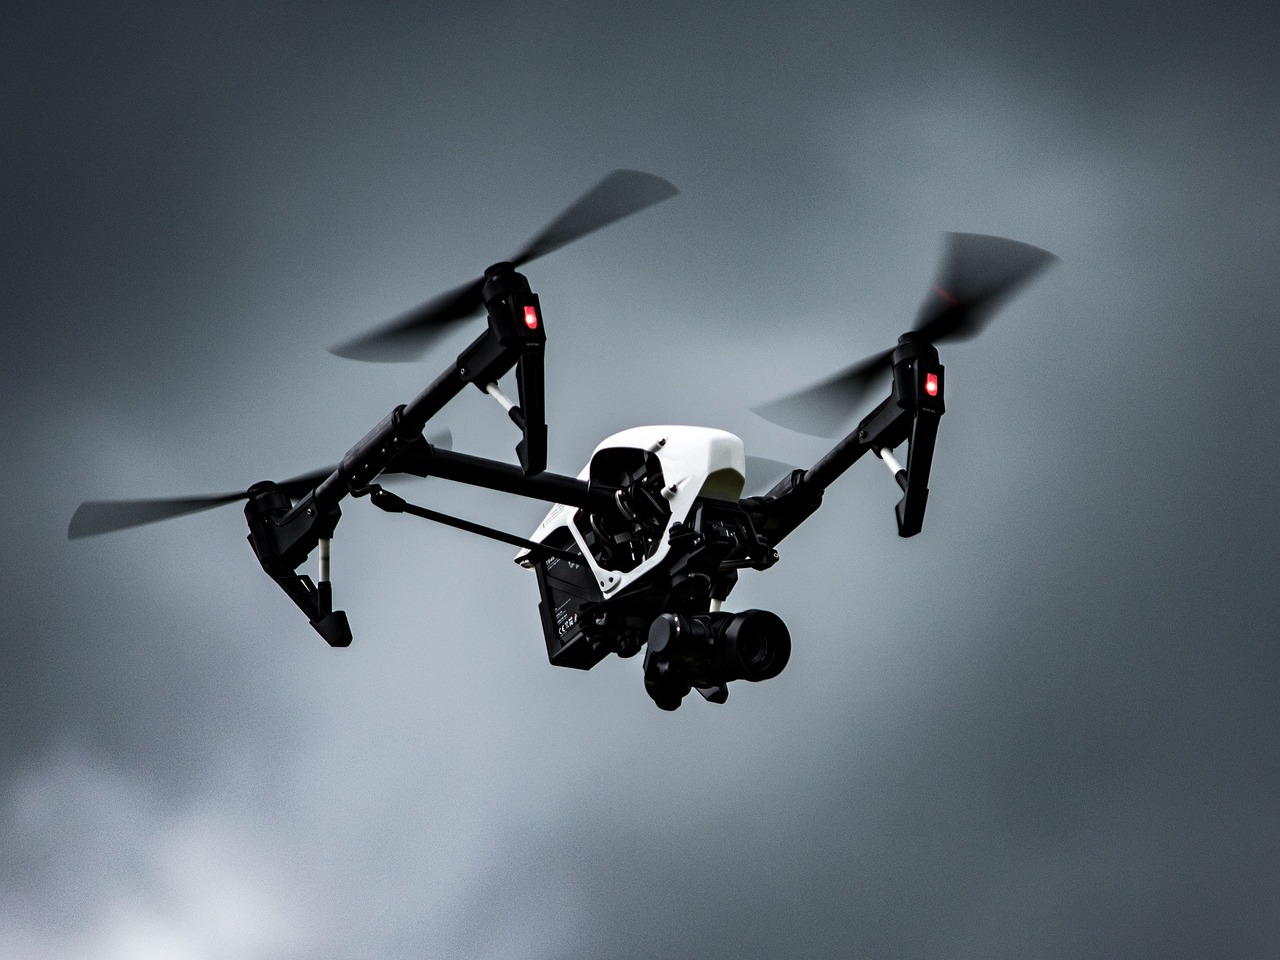 Agrárminisztérium: elkészült a drónos permetezés jogszabályi háttere